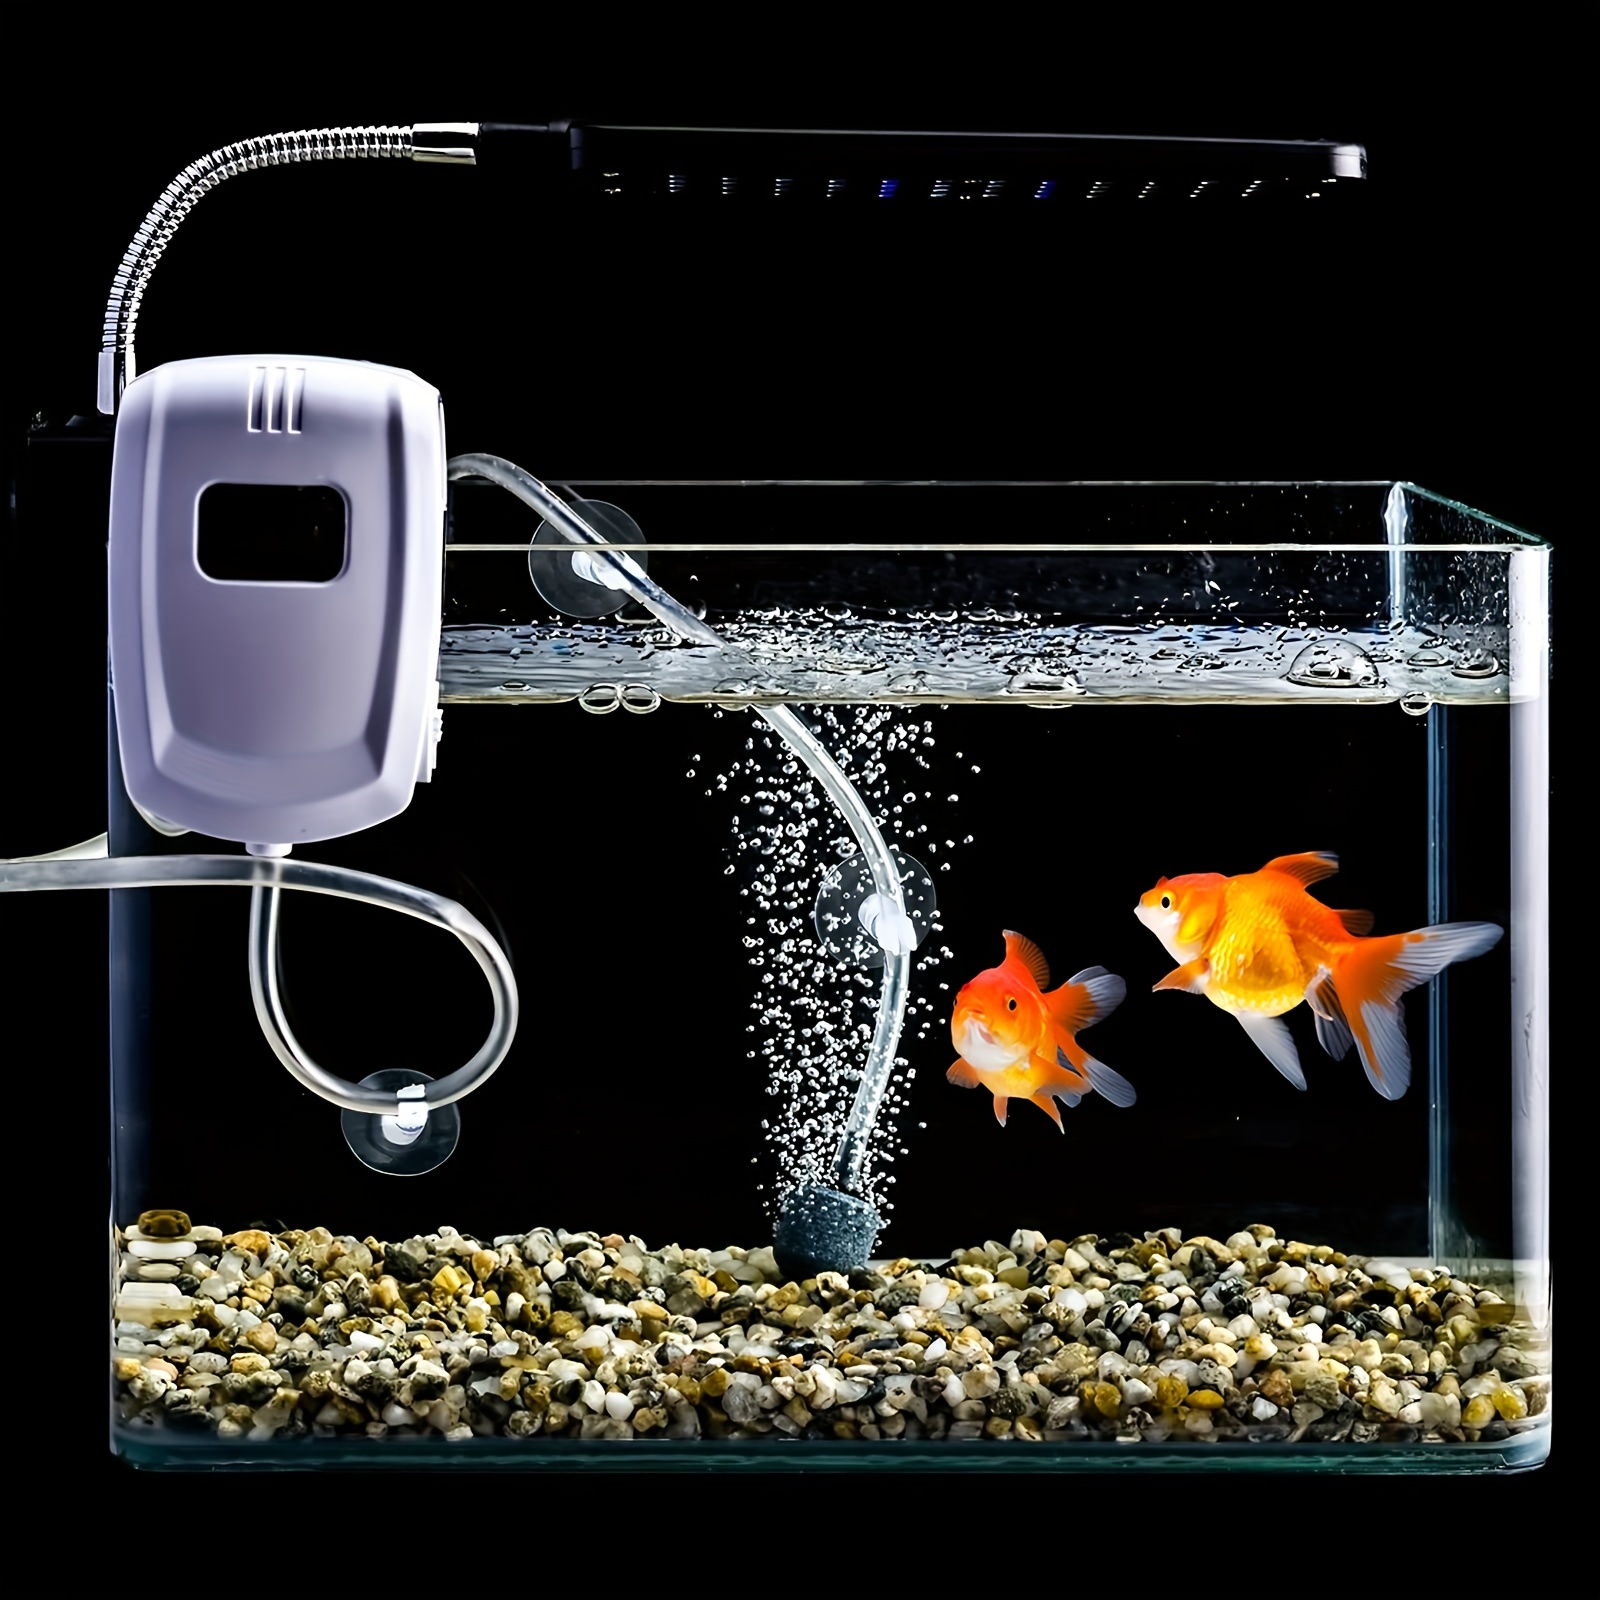 Co2-diffusor Für Aquarien, Aquarium-co2-system-diffusor